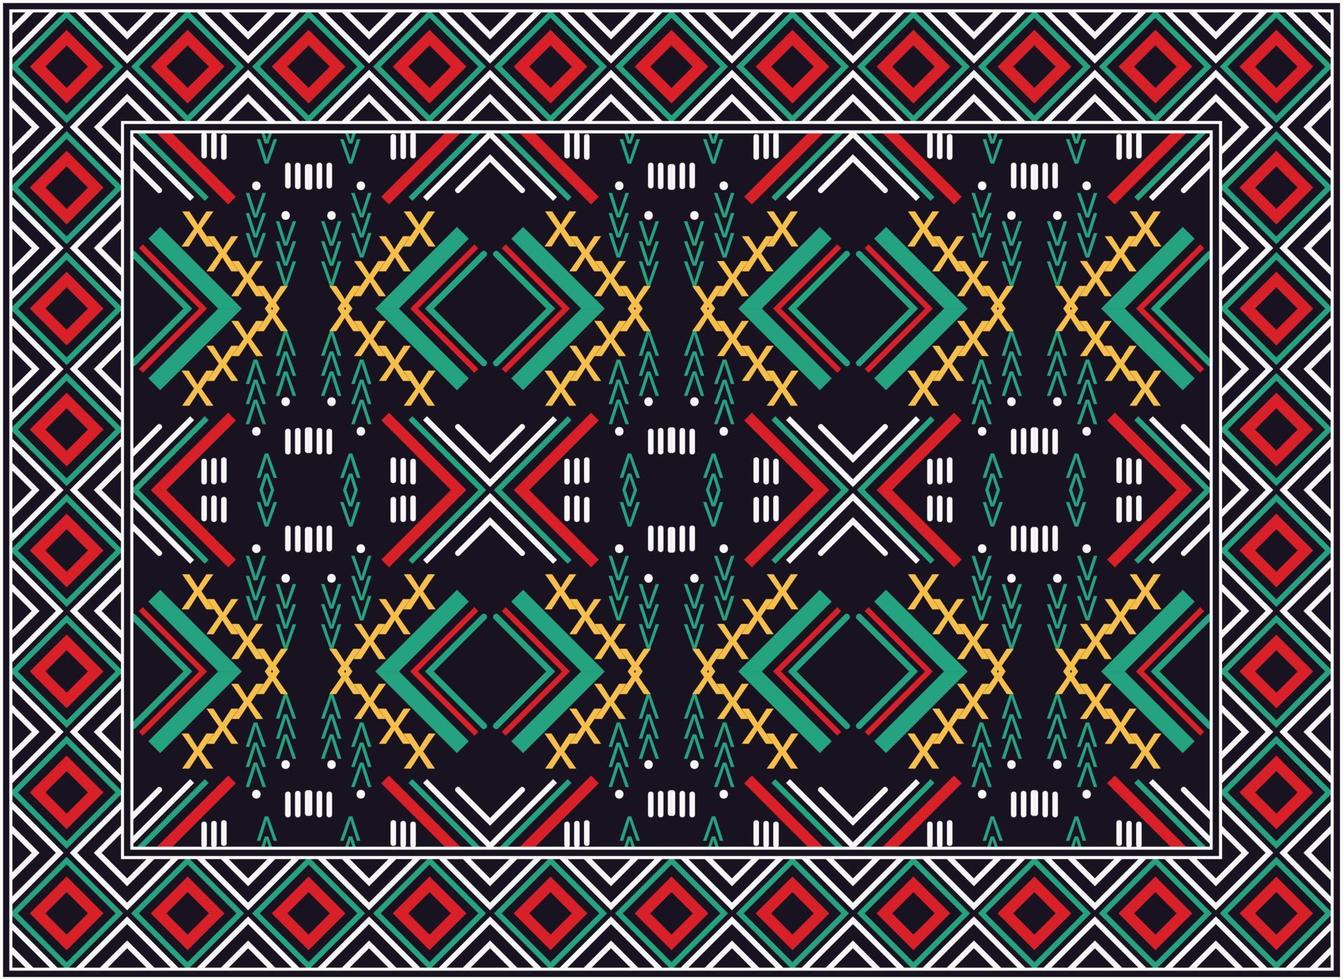 antiek Perzisch tapijt, Afrikaanse motief modern Perzisch tapijt, Afrikaanse etnisch aztec stijl ontwerp voor afdrukken kleding stof tapijten, handdoeken, zakdoeken, sjaals tapijt, vector